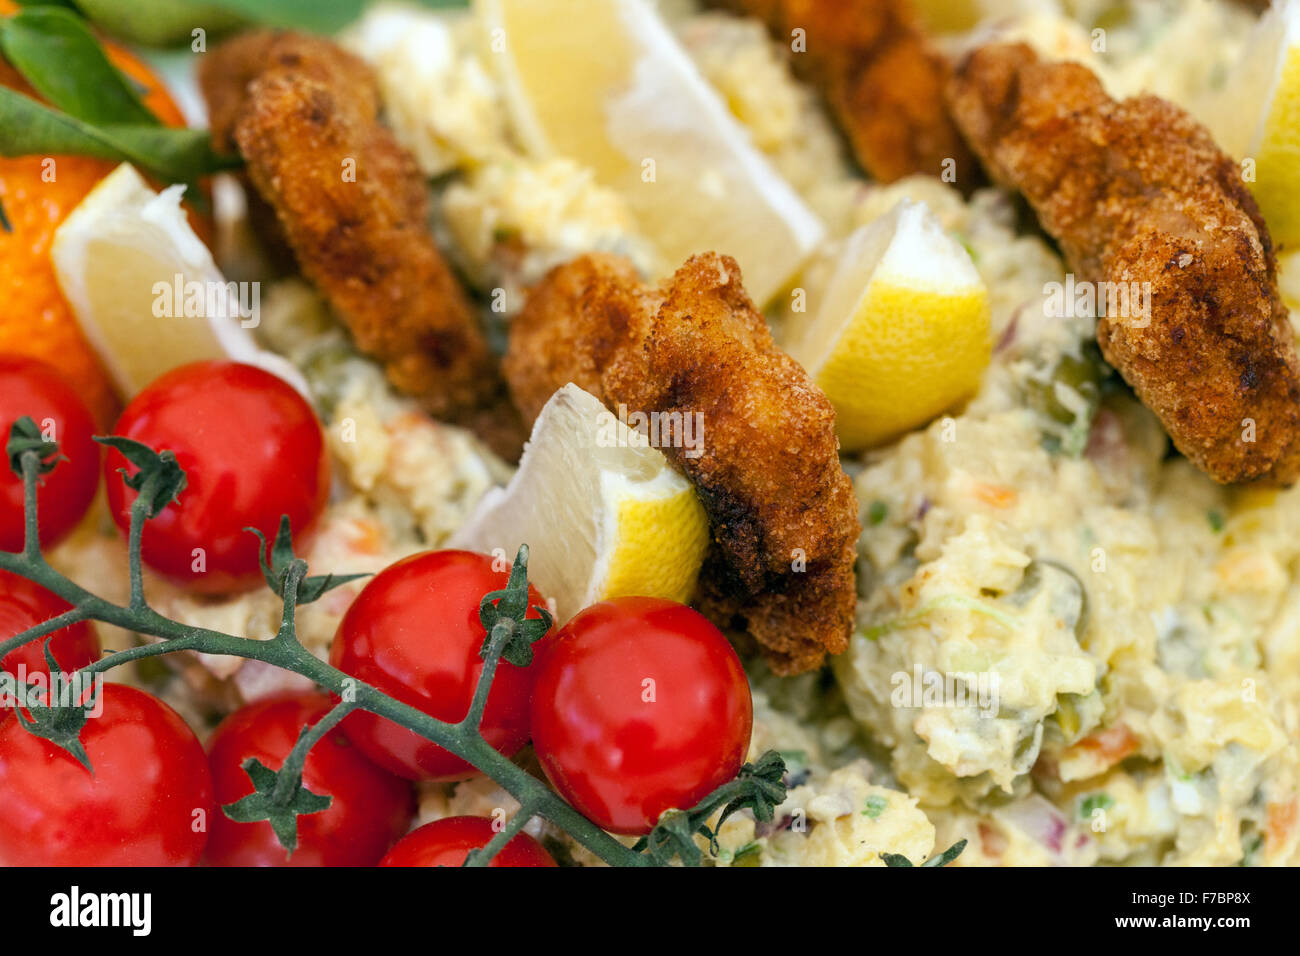 Salade de pommes de terre avec escalopes viennoises et un morceau de citron, tomates cerise plat tchèque traditionnel pour le dîner de Noël Banque D'Images